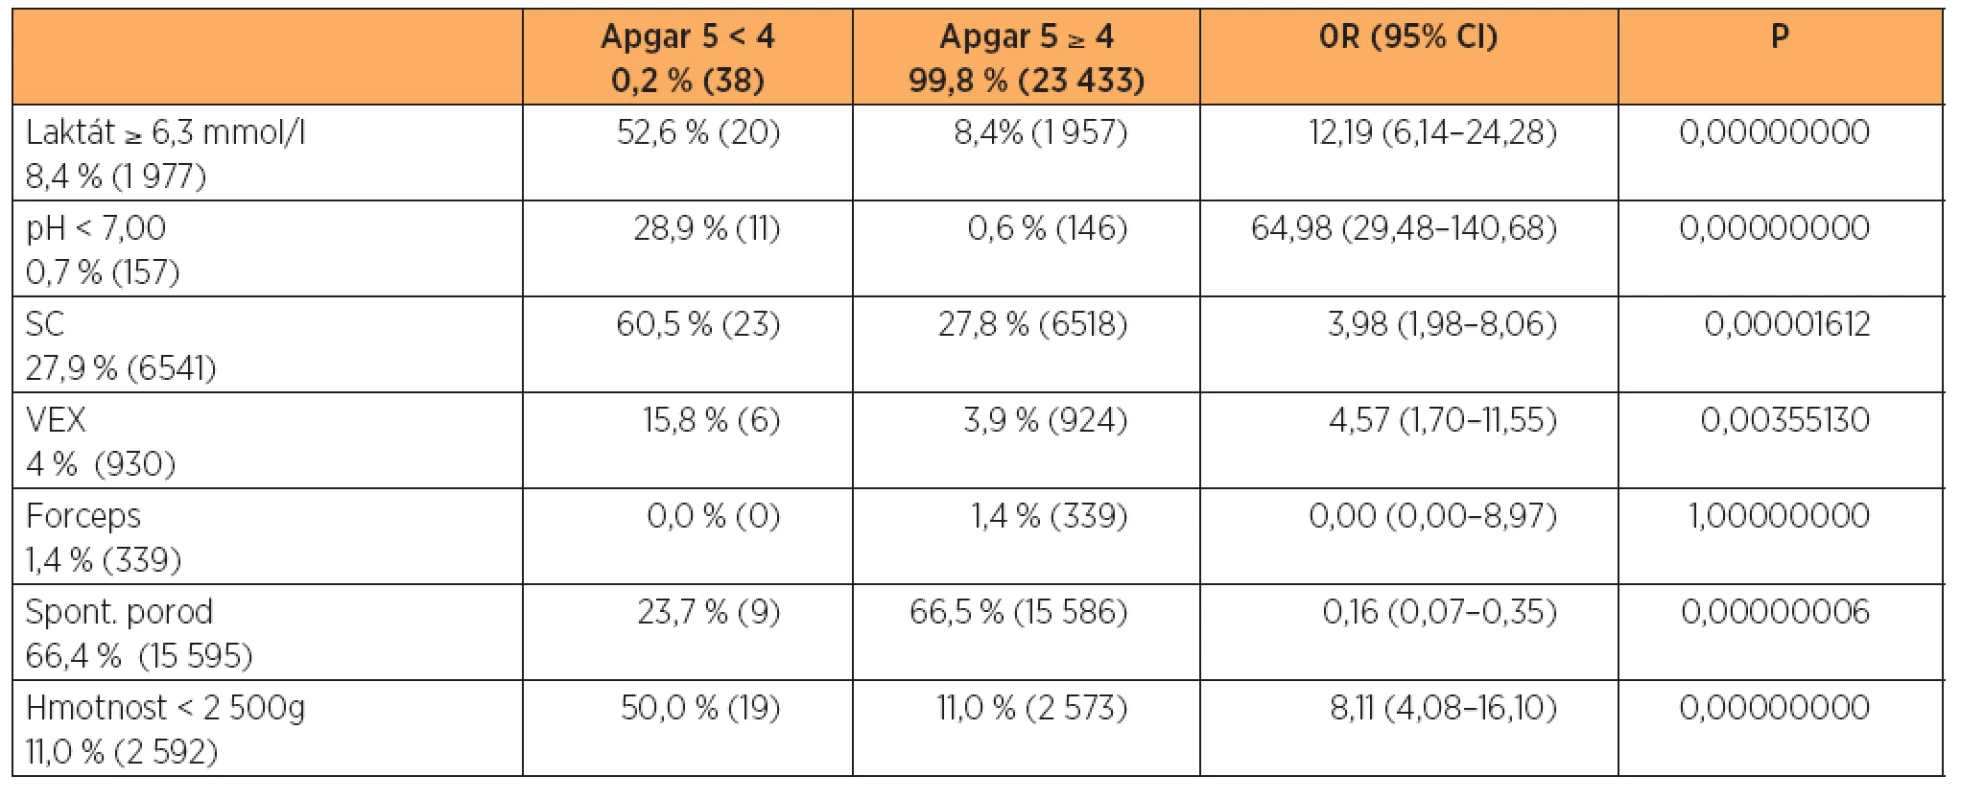 Vztah vybraných charakteristik k hodnocení Apgarové méně než 4 body za 5 minut po porodu